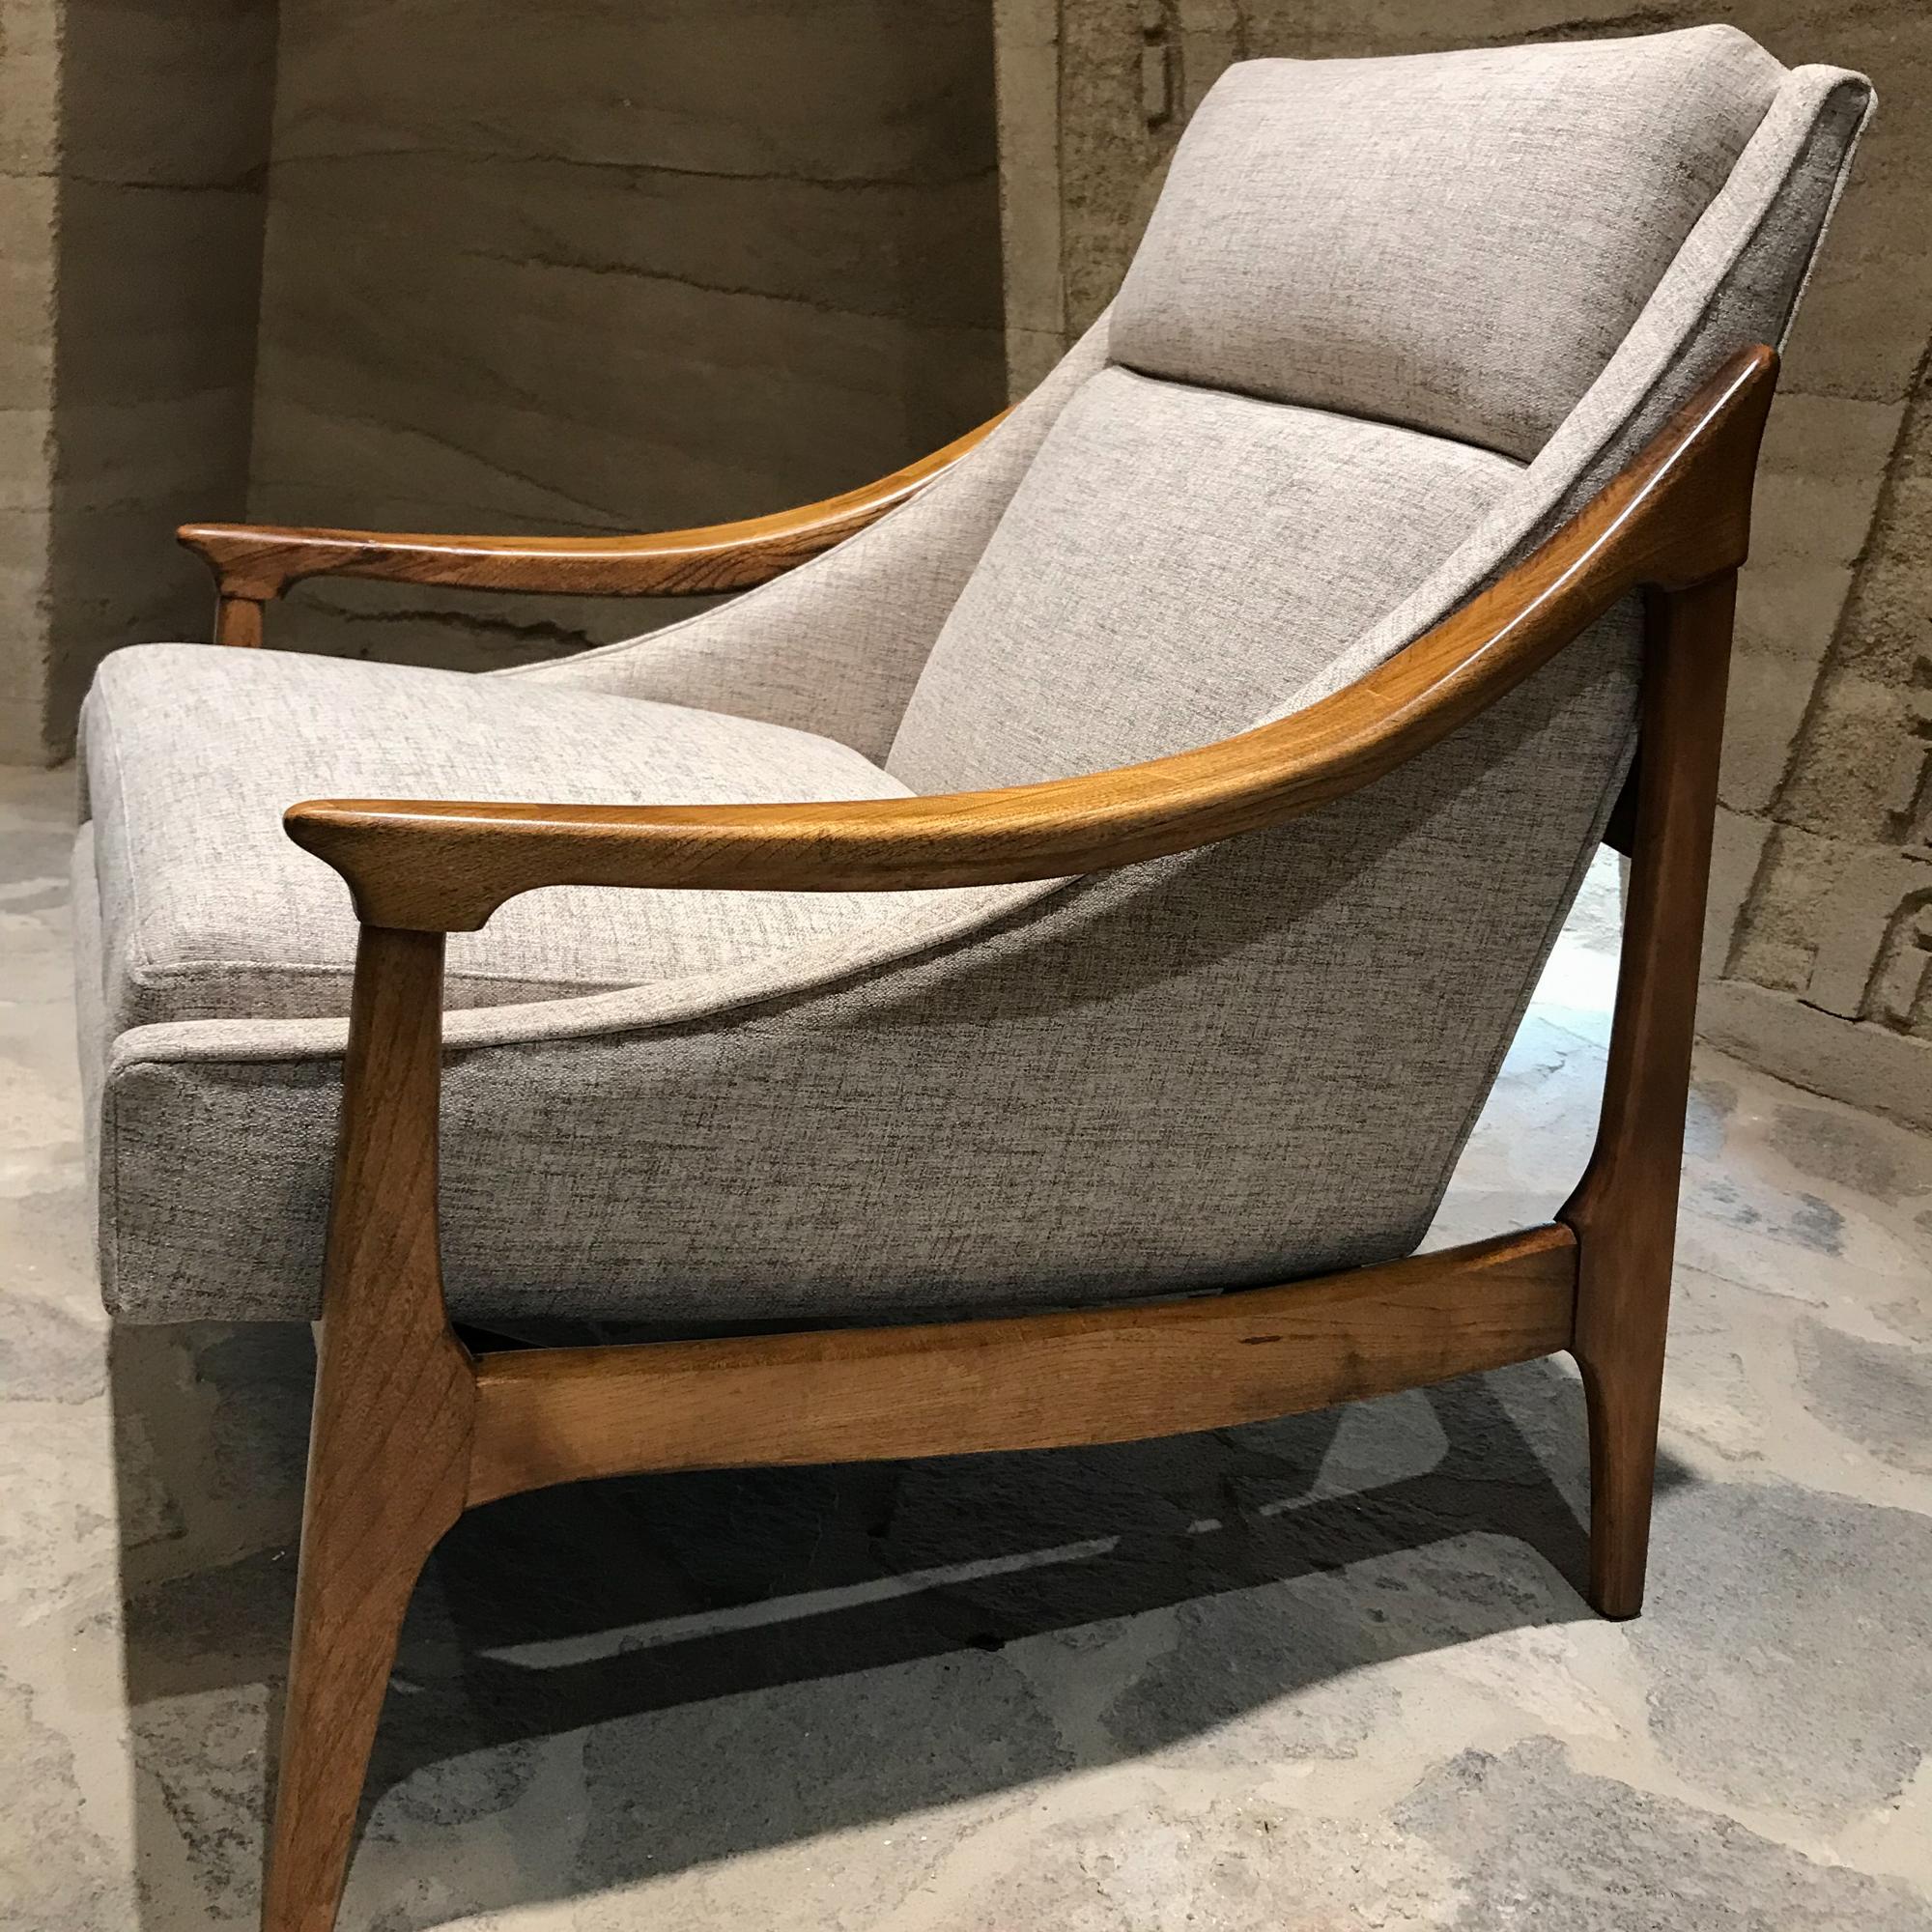 Walnut Sensationally Sleek Scandinavian Lounge Chair & Ottoman Restored Fresh 1960s Mod